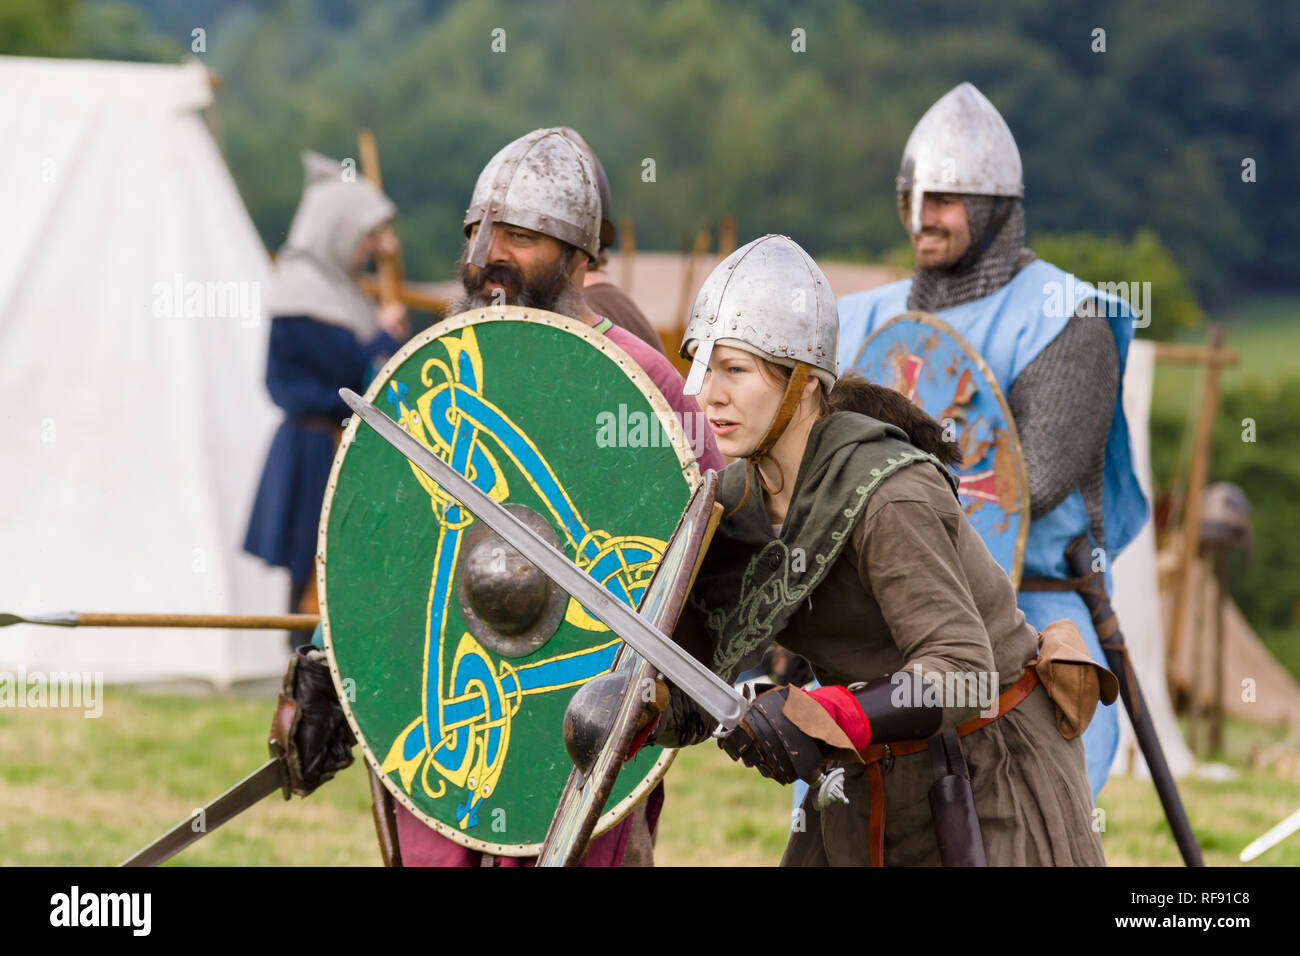 Mittelalterliche Re-enactors in Rüstung und Kostüme des 12. Jahrhunderts mit Schwertern und Schilden ausgestattet gekleidet nachgespielt Bekämpfung des Zeitraums Stockfoto